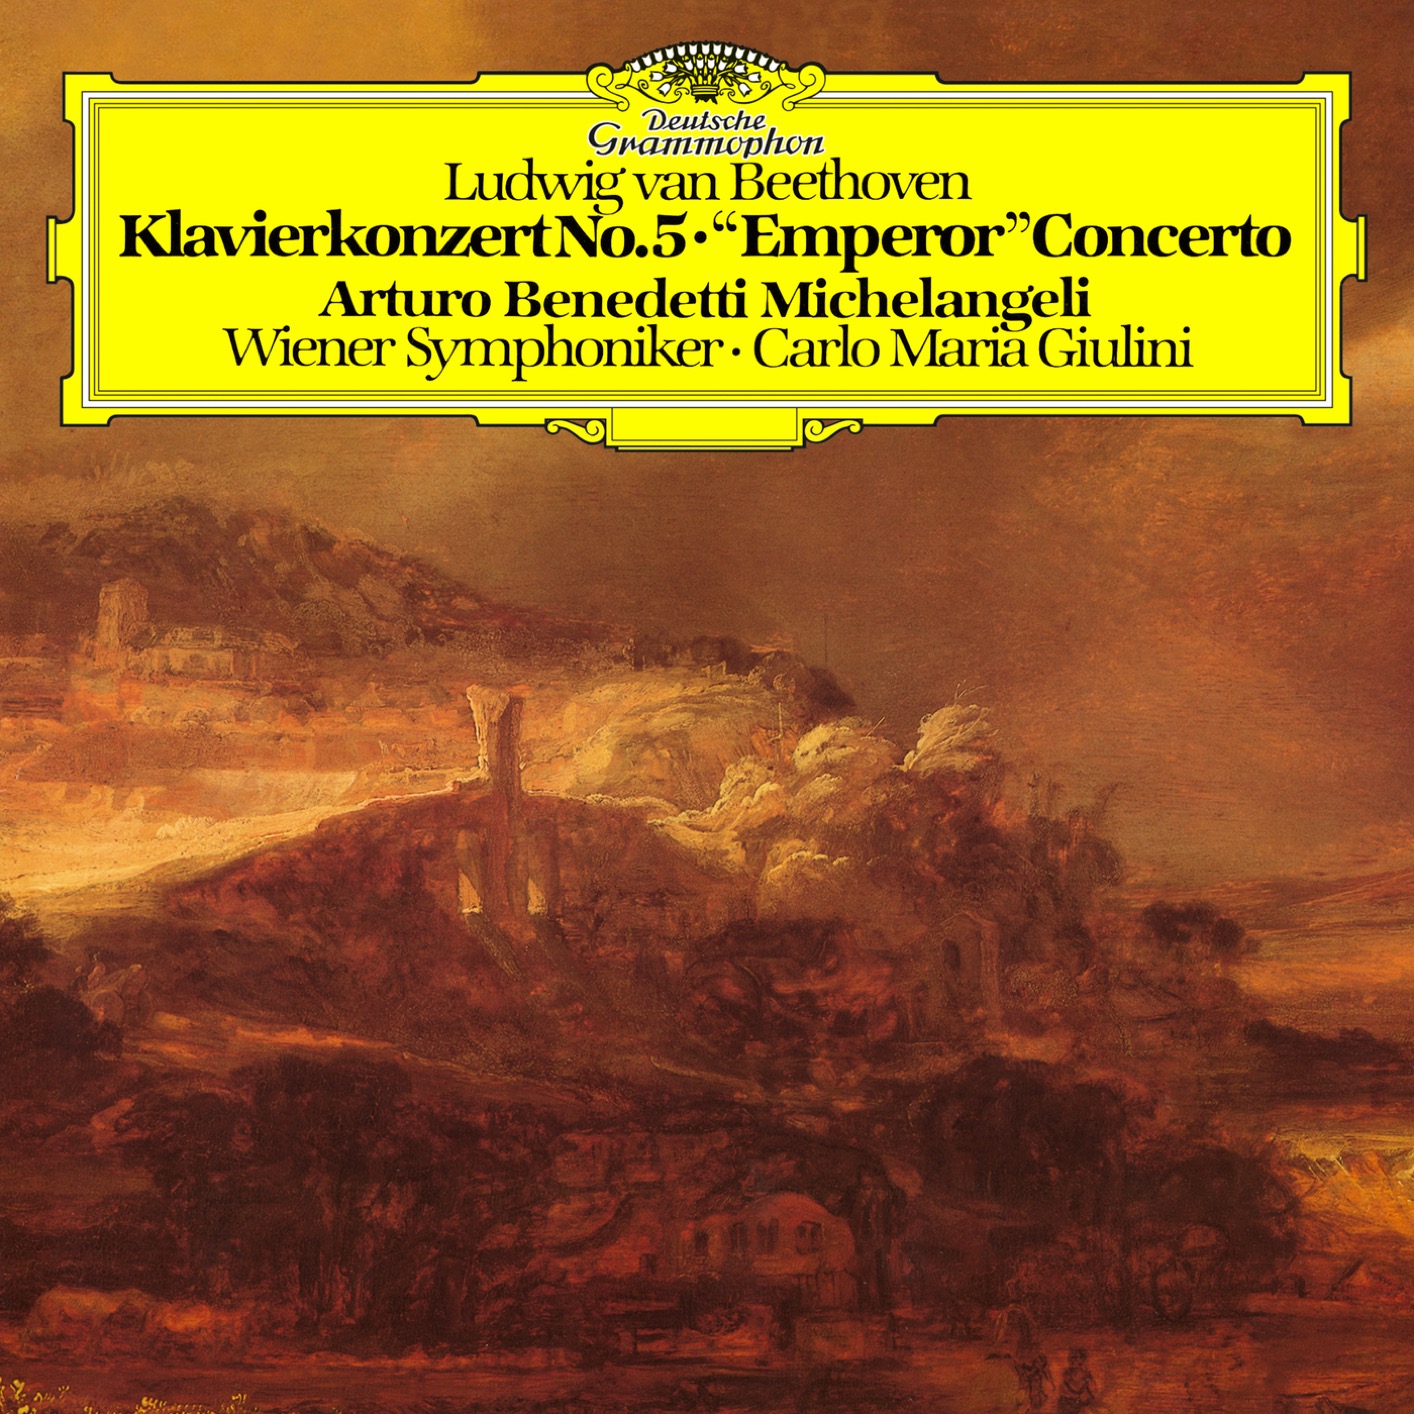 Arturo Benedetti Michelangeli - Beethoven: Piano Concerto No.5 in E-Flat Major, Op. 73 (Remastered) (2019) [FLAC 24bit/192kHz]